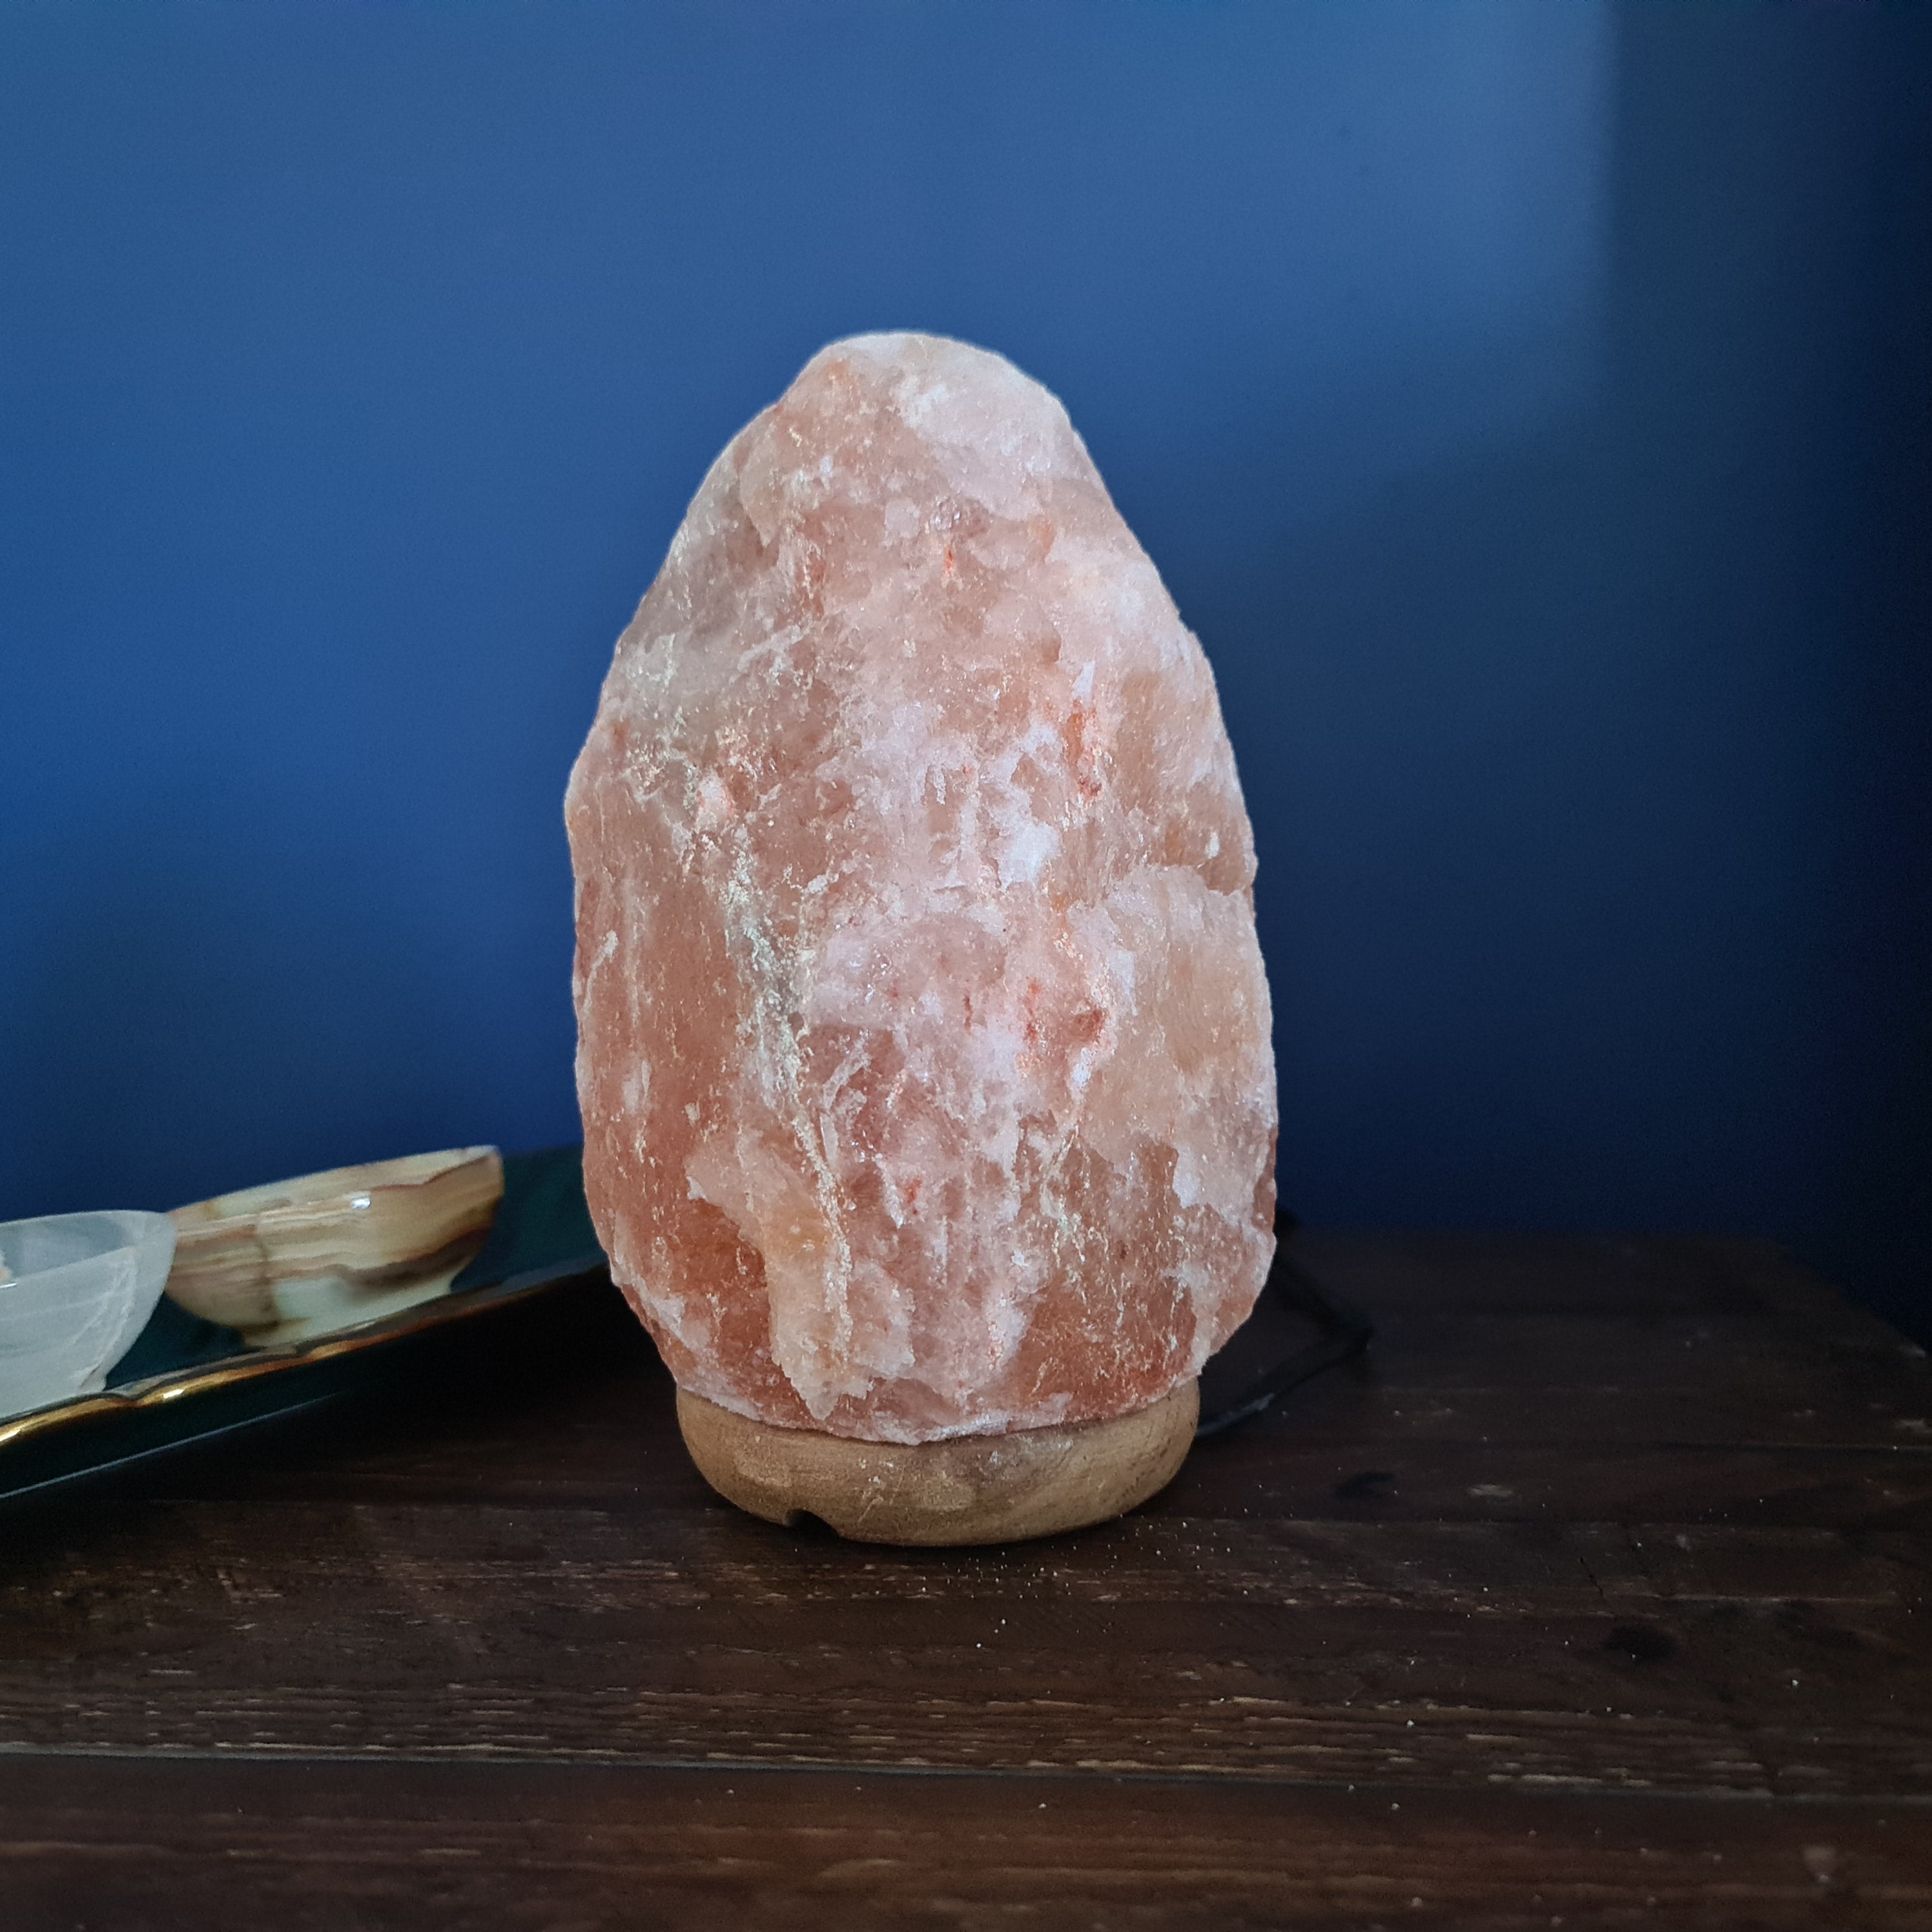 3 - 4 Kg Natural Himalayan Crystal Salt Lamp (Crafted)